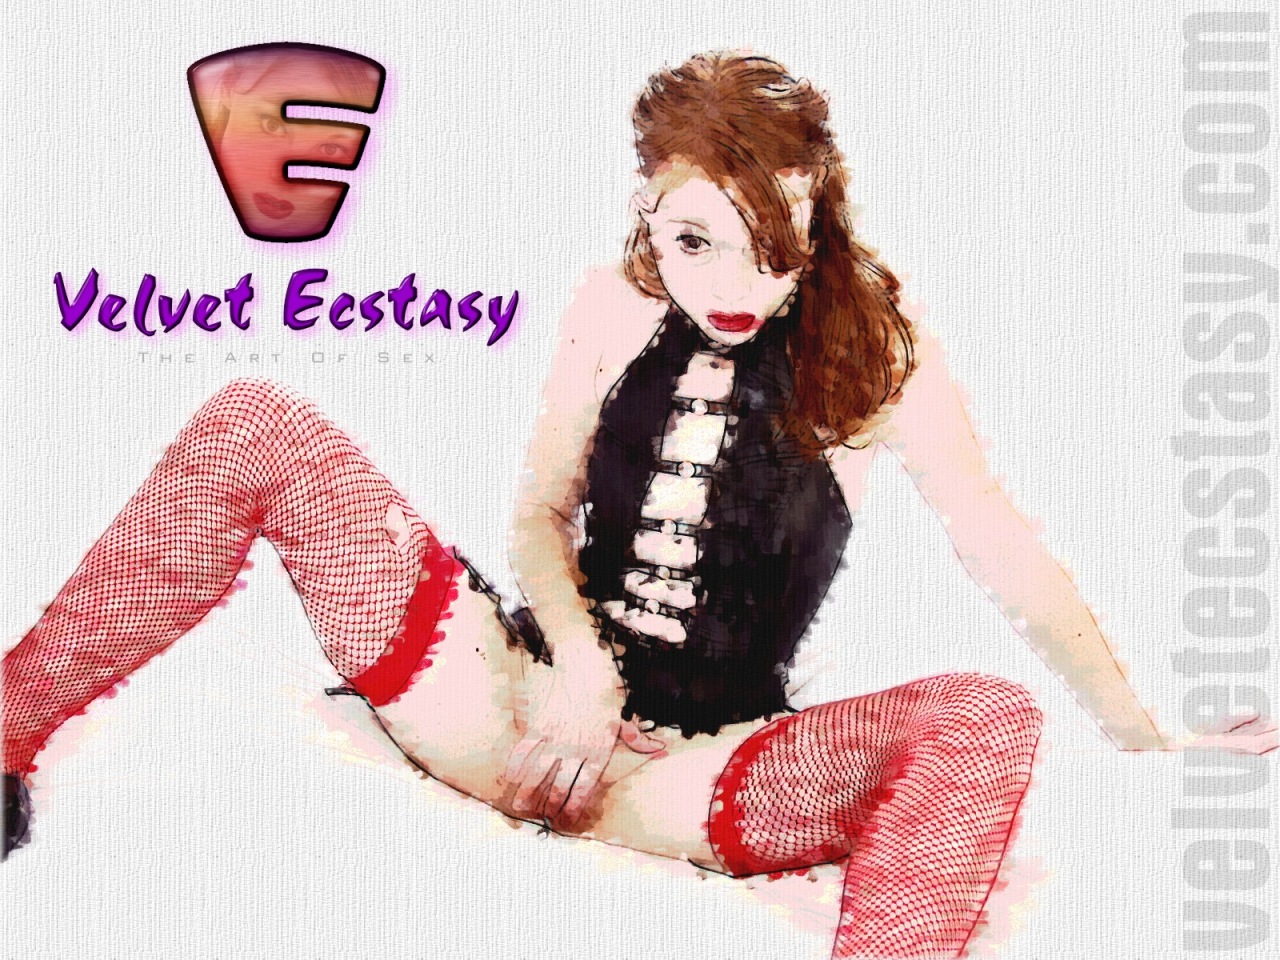 Velvet Ecstasy Wallpaper - 1280x960